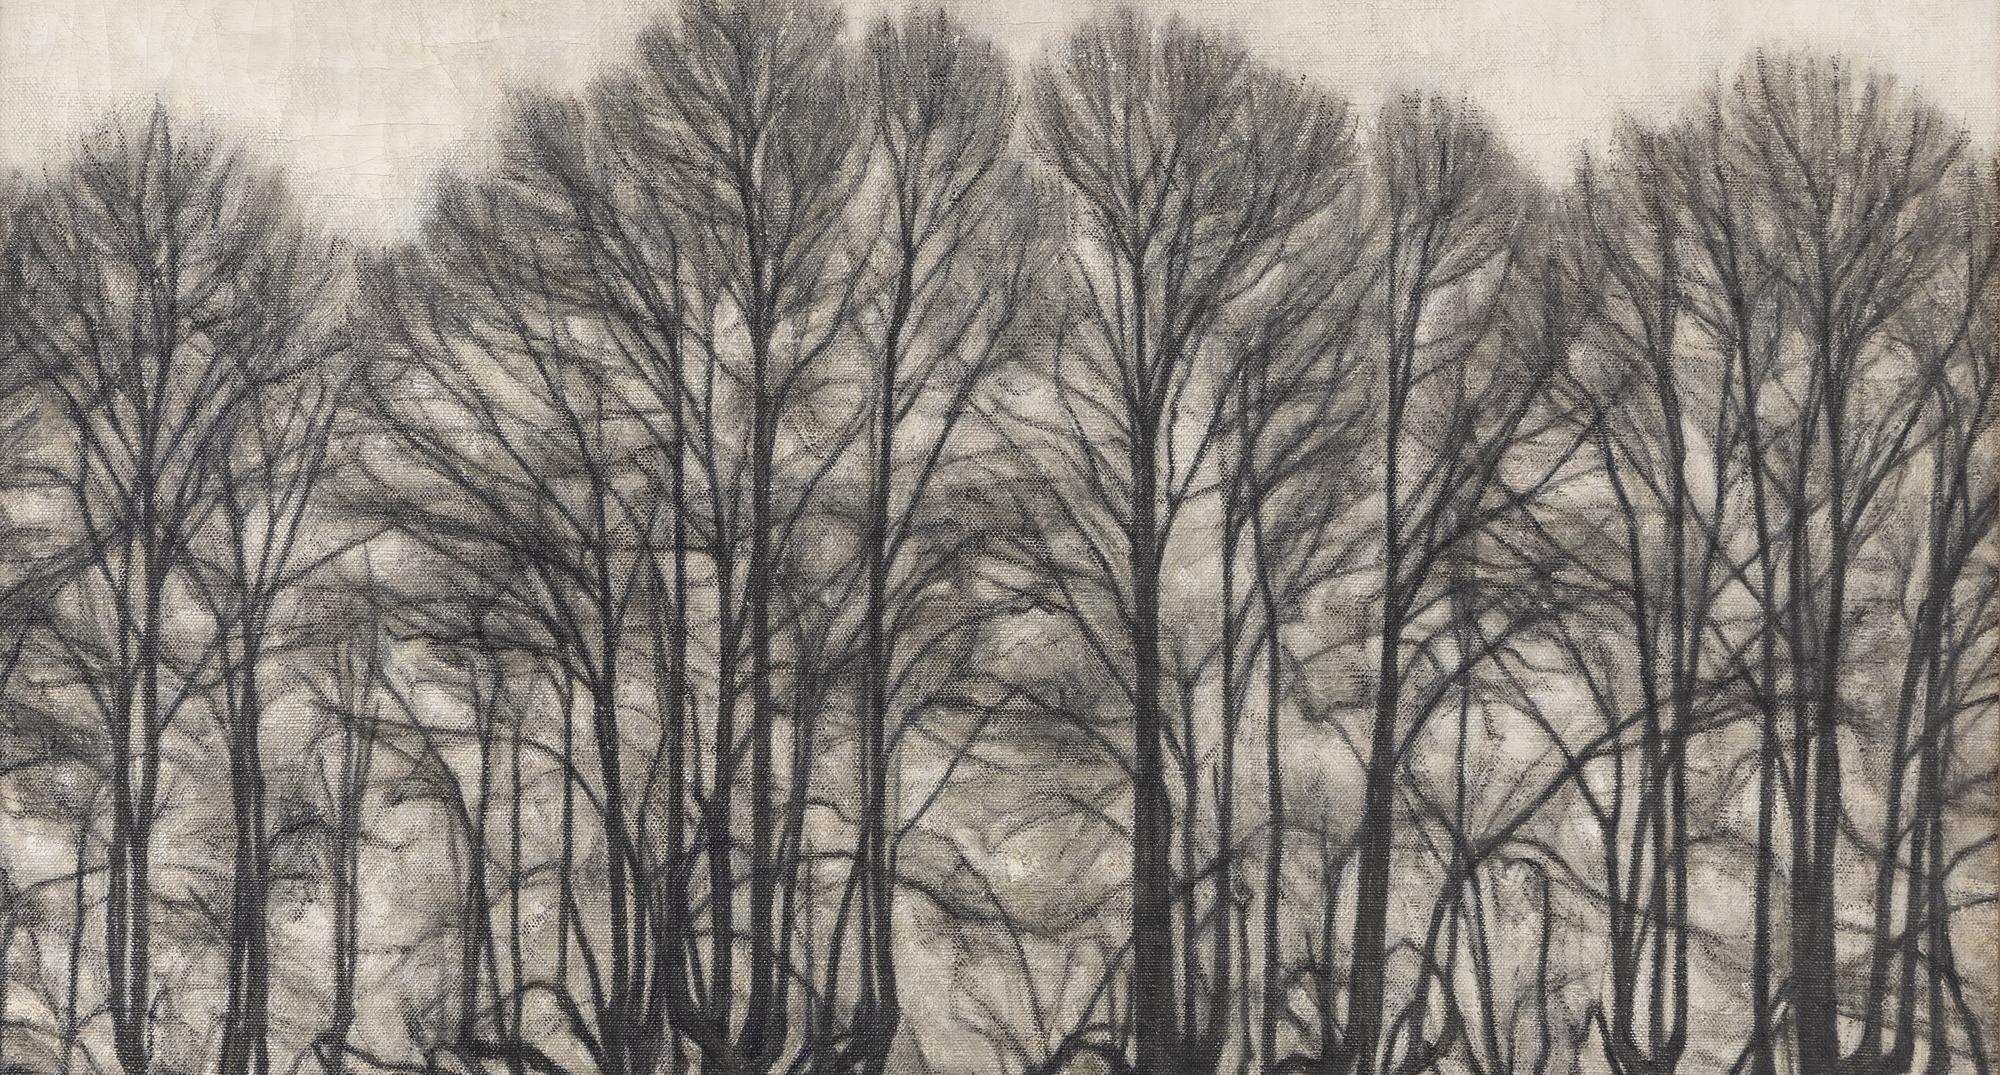 Svend Hammershøi: 'Nackte Bäume‘. Ohne Jahr. Privatbesitz.
